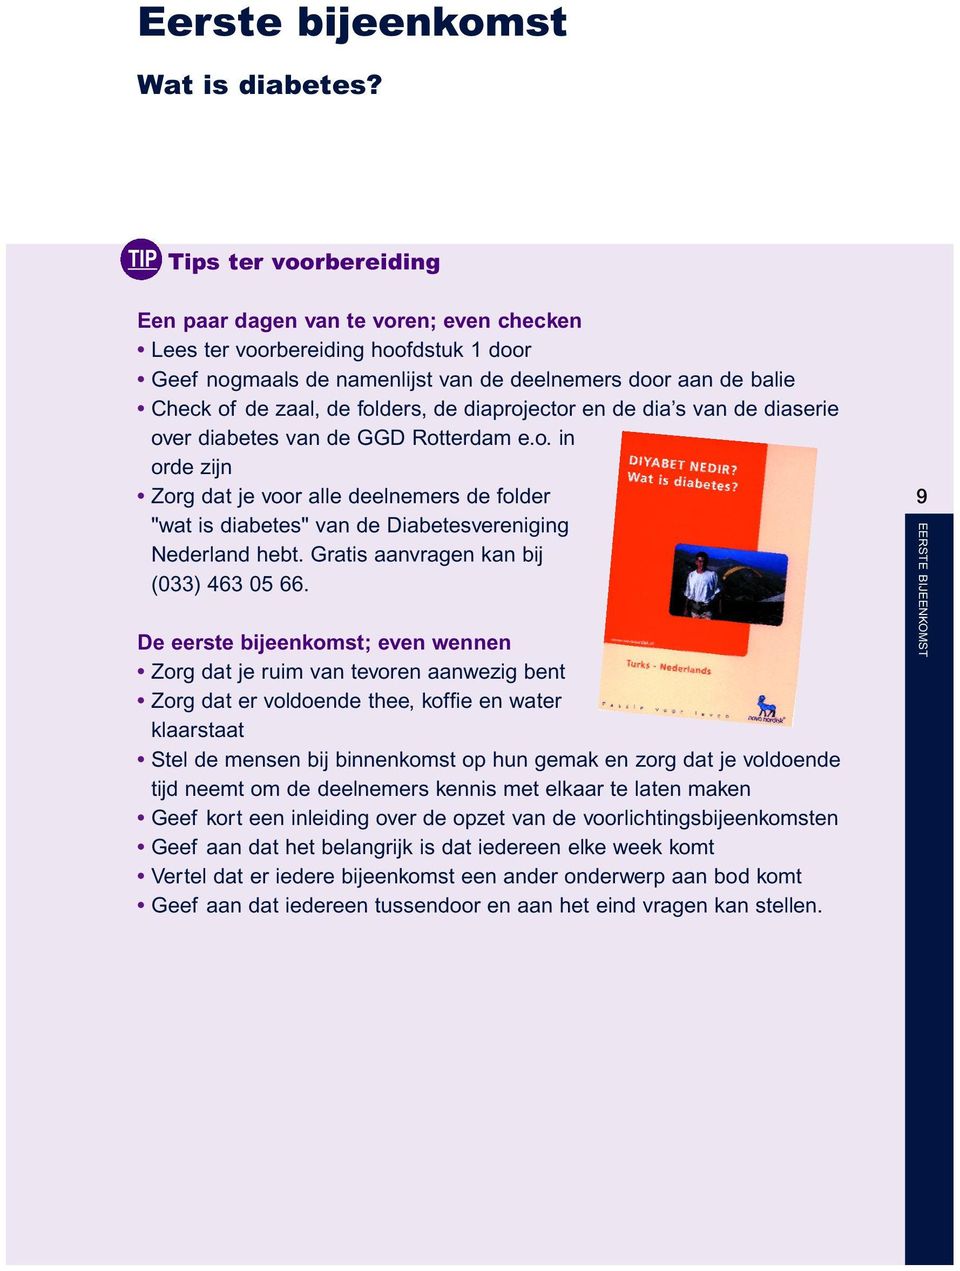 folders, de diaprojector en de dia s van de diaserie over diabetes van de GGD Rotterdam e.o. in orde zijn Zorg dat je voor alle deelnemers de folder "wat is diabetes" van de Diabetesvereniging Nederland hebt.